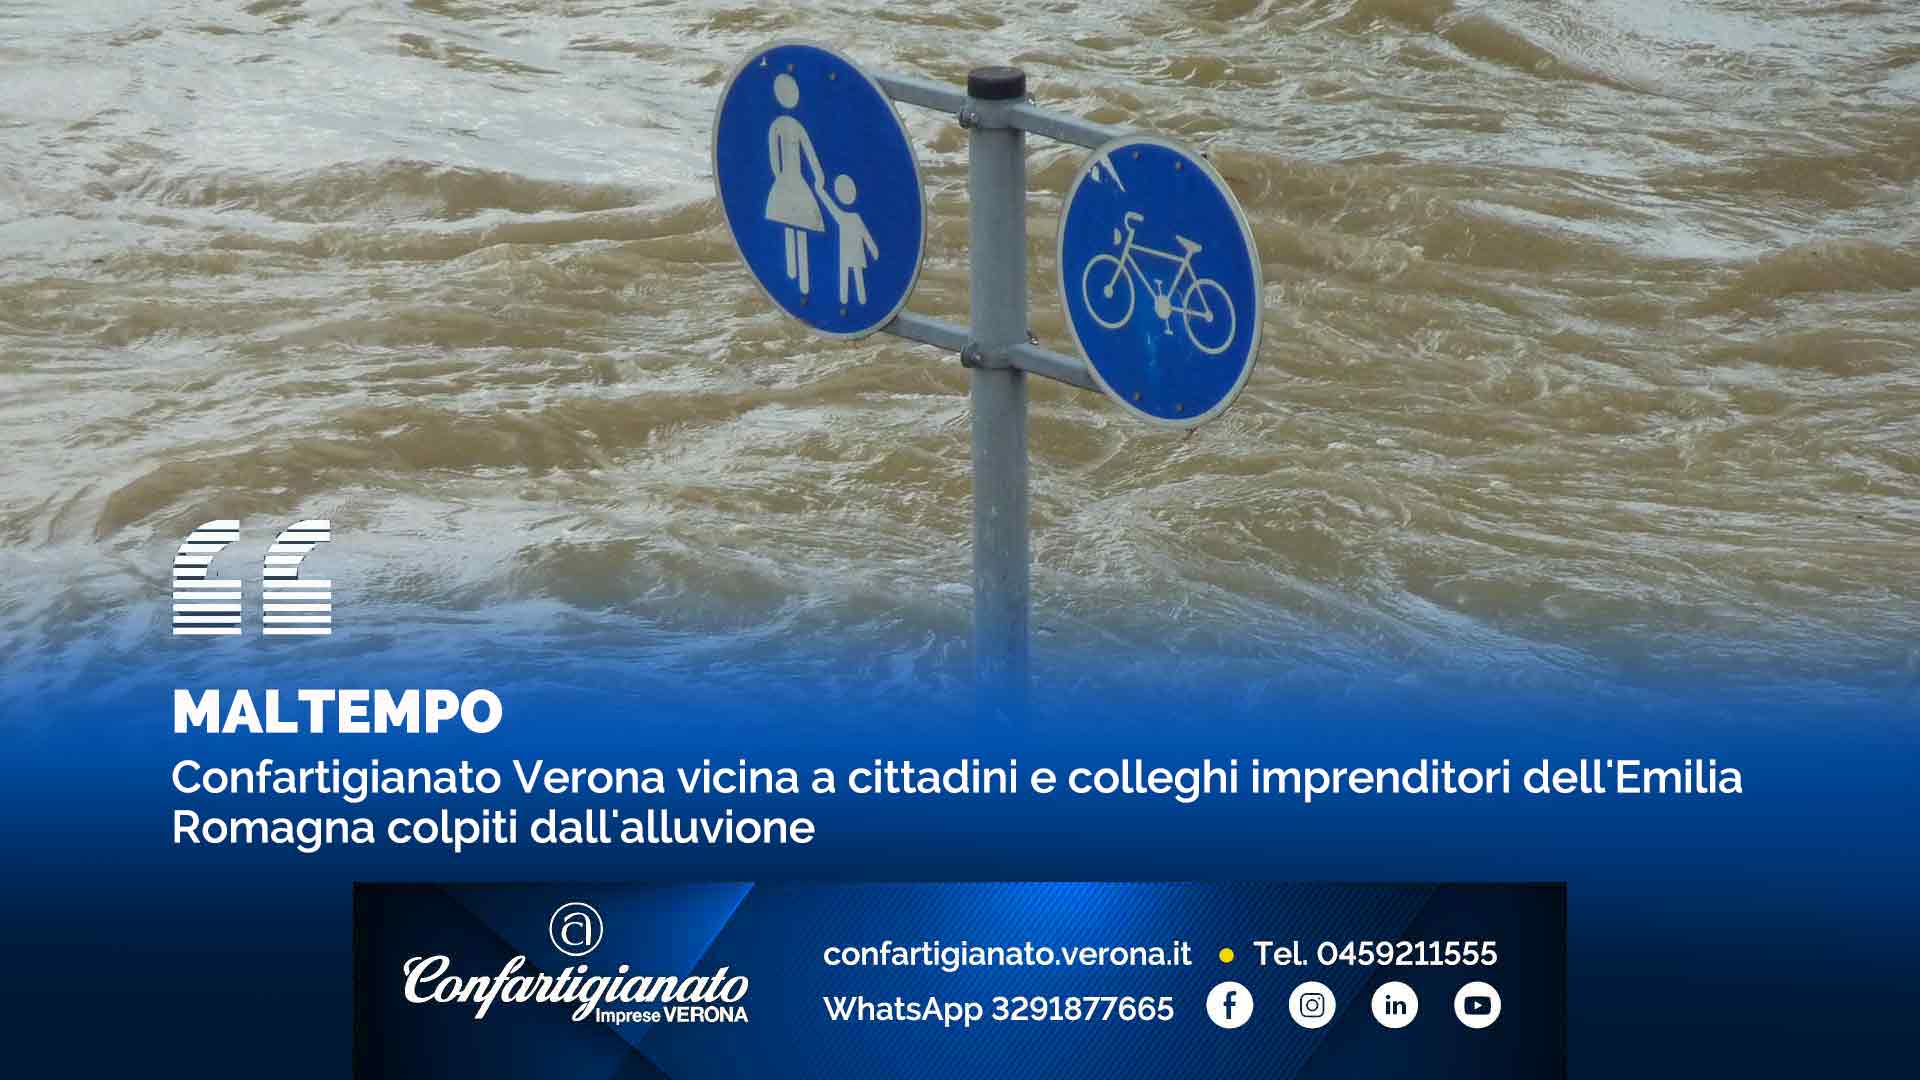 MALTEMPO – Confartigianato Verona vicina a cittadini e colleghi imprenditori dell'Emilia Romagna colpiti dall'alluvione